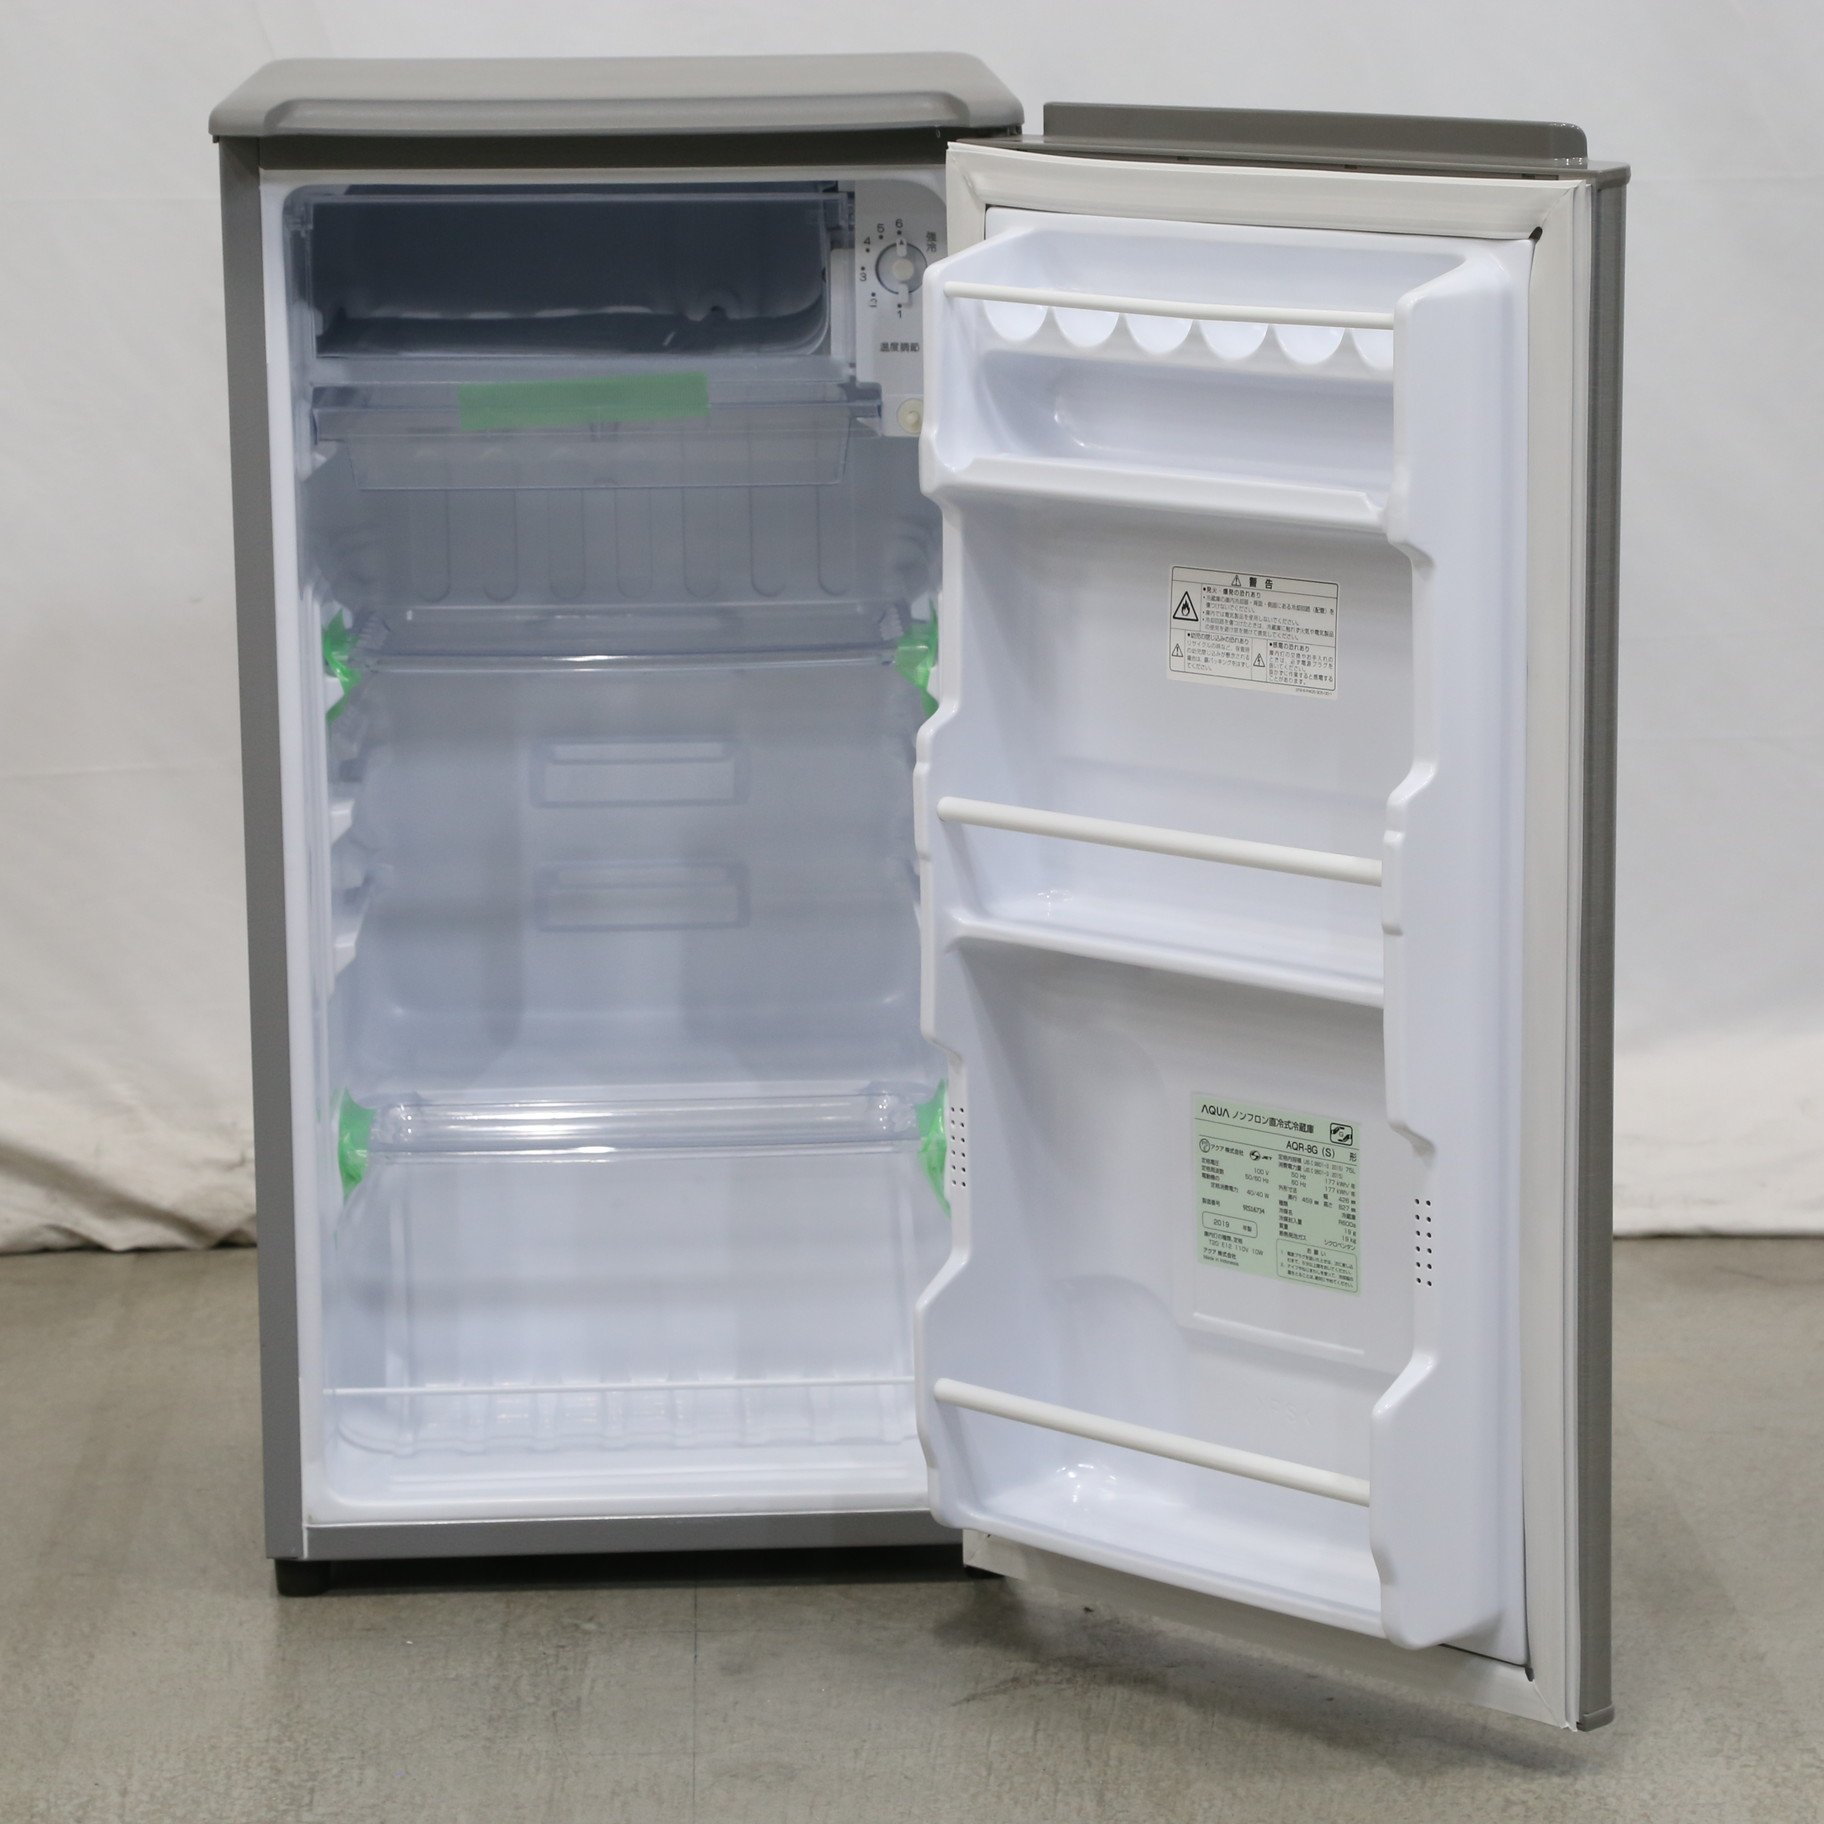 2018年製 AQUA アクア 75L冷蔵庫 AQR-8G - キッチン家電